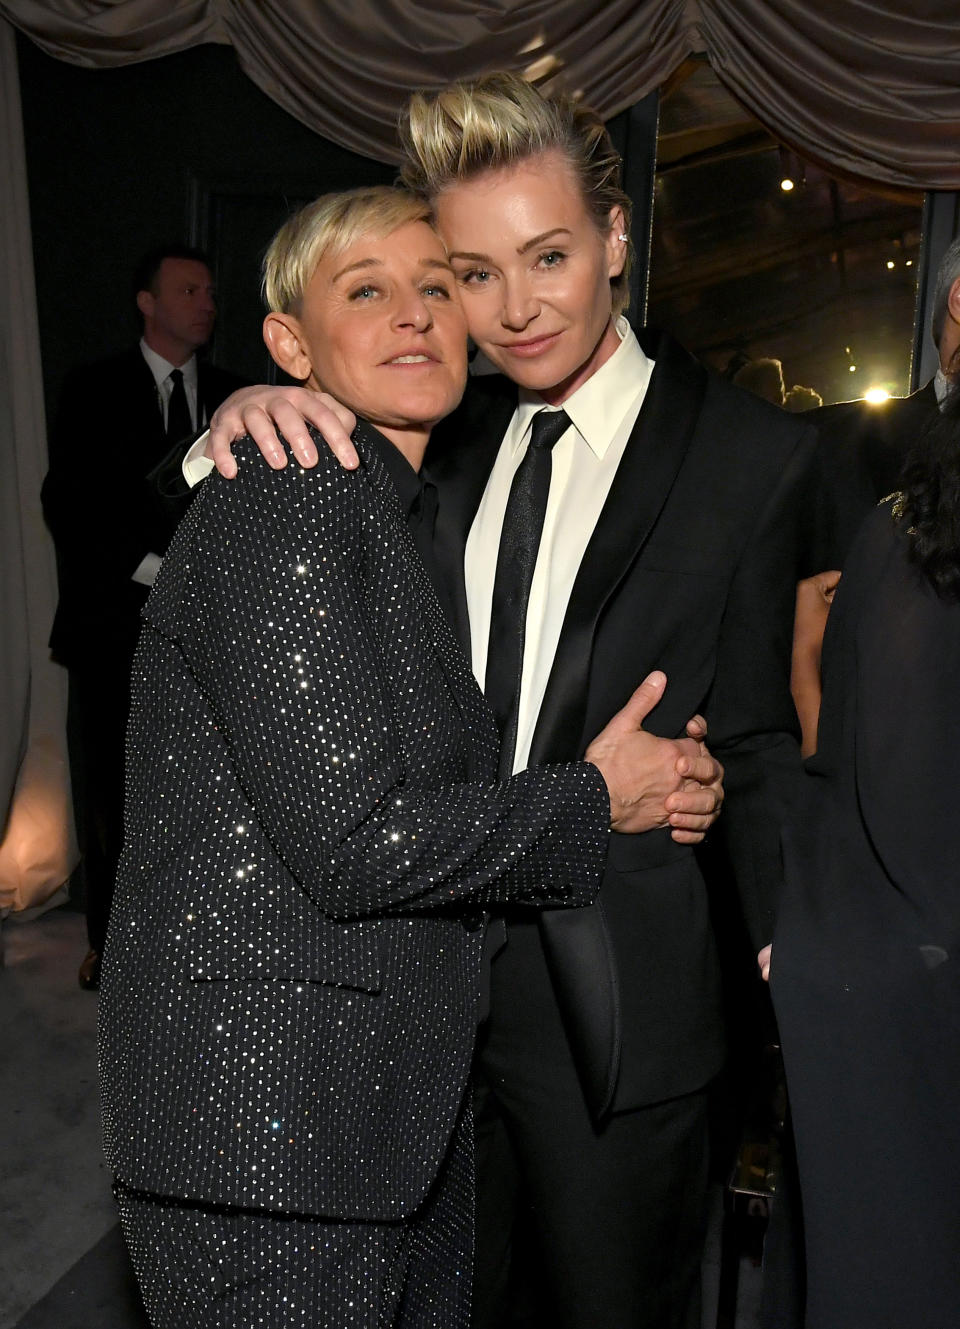 Ellen DeGeneres & Portia de Rossi